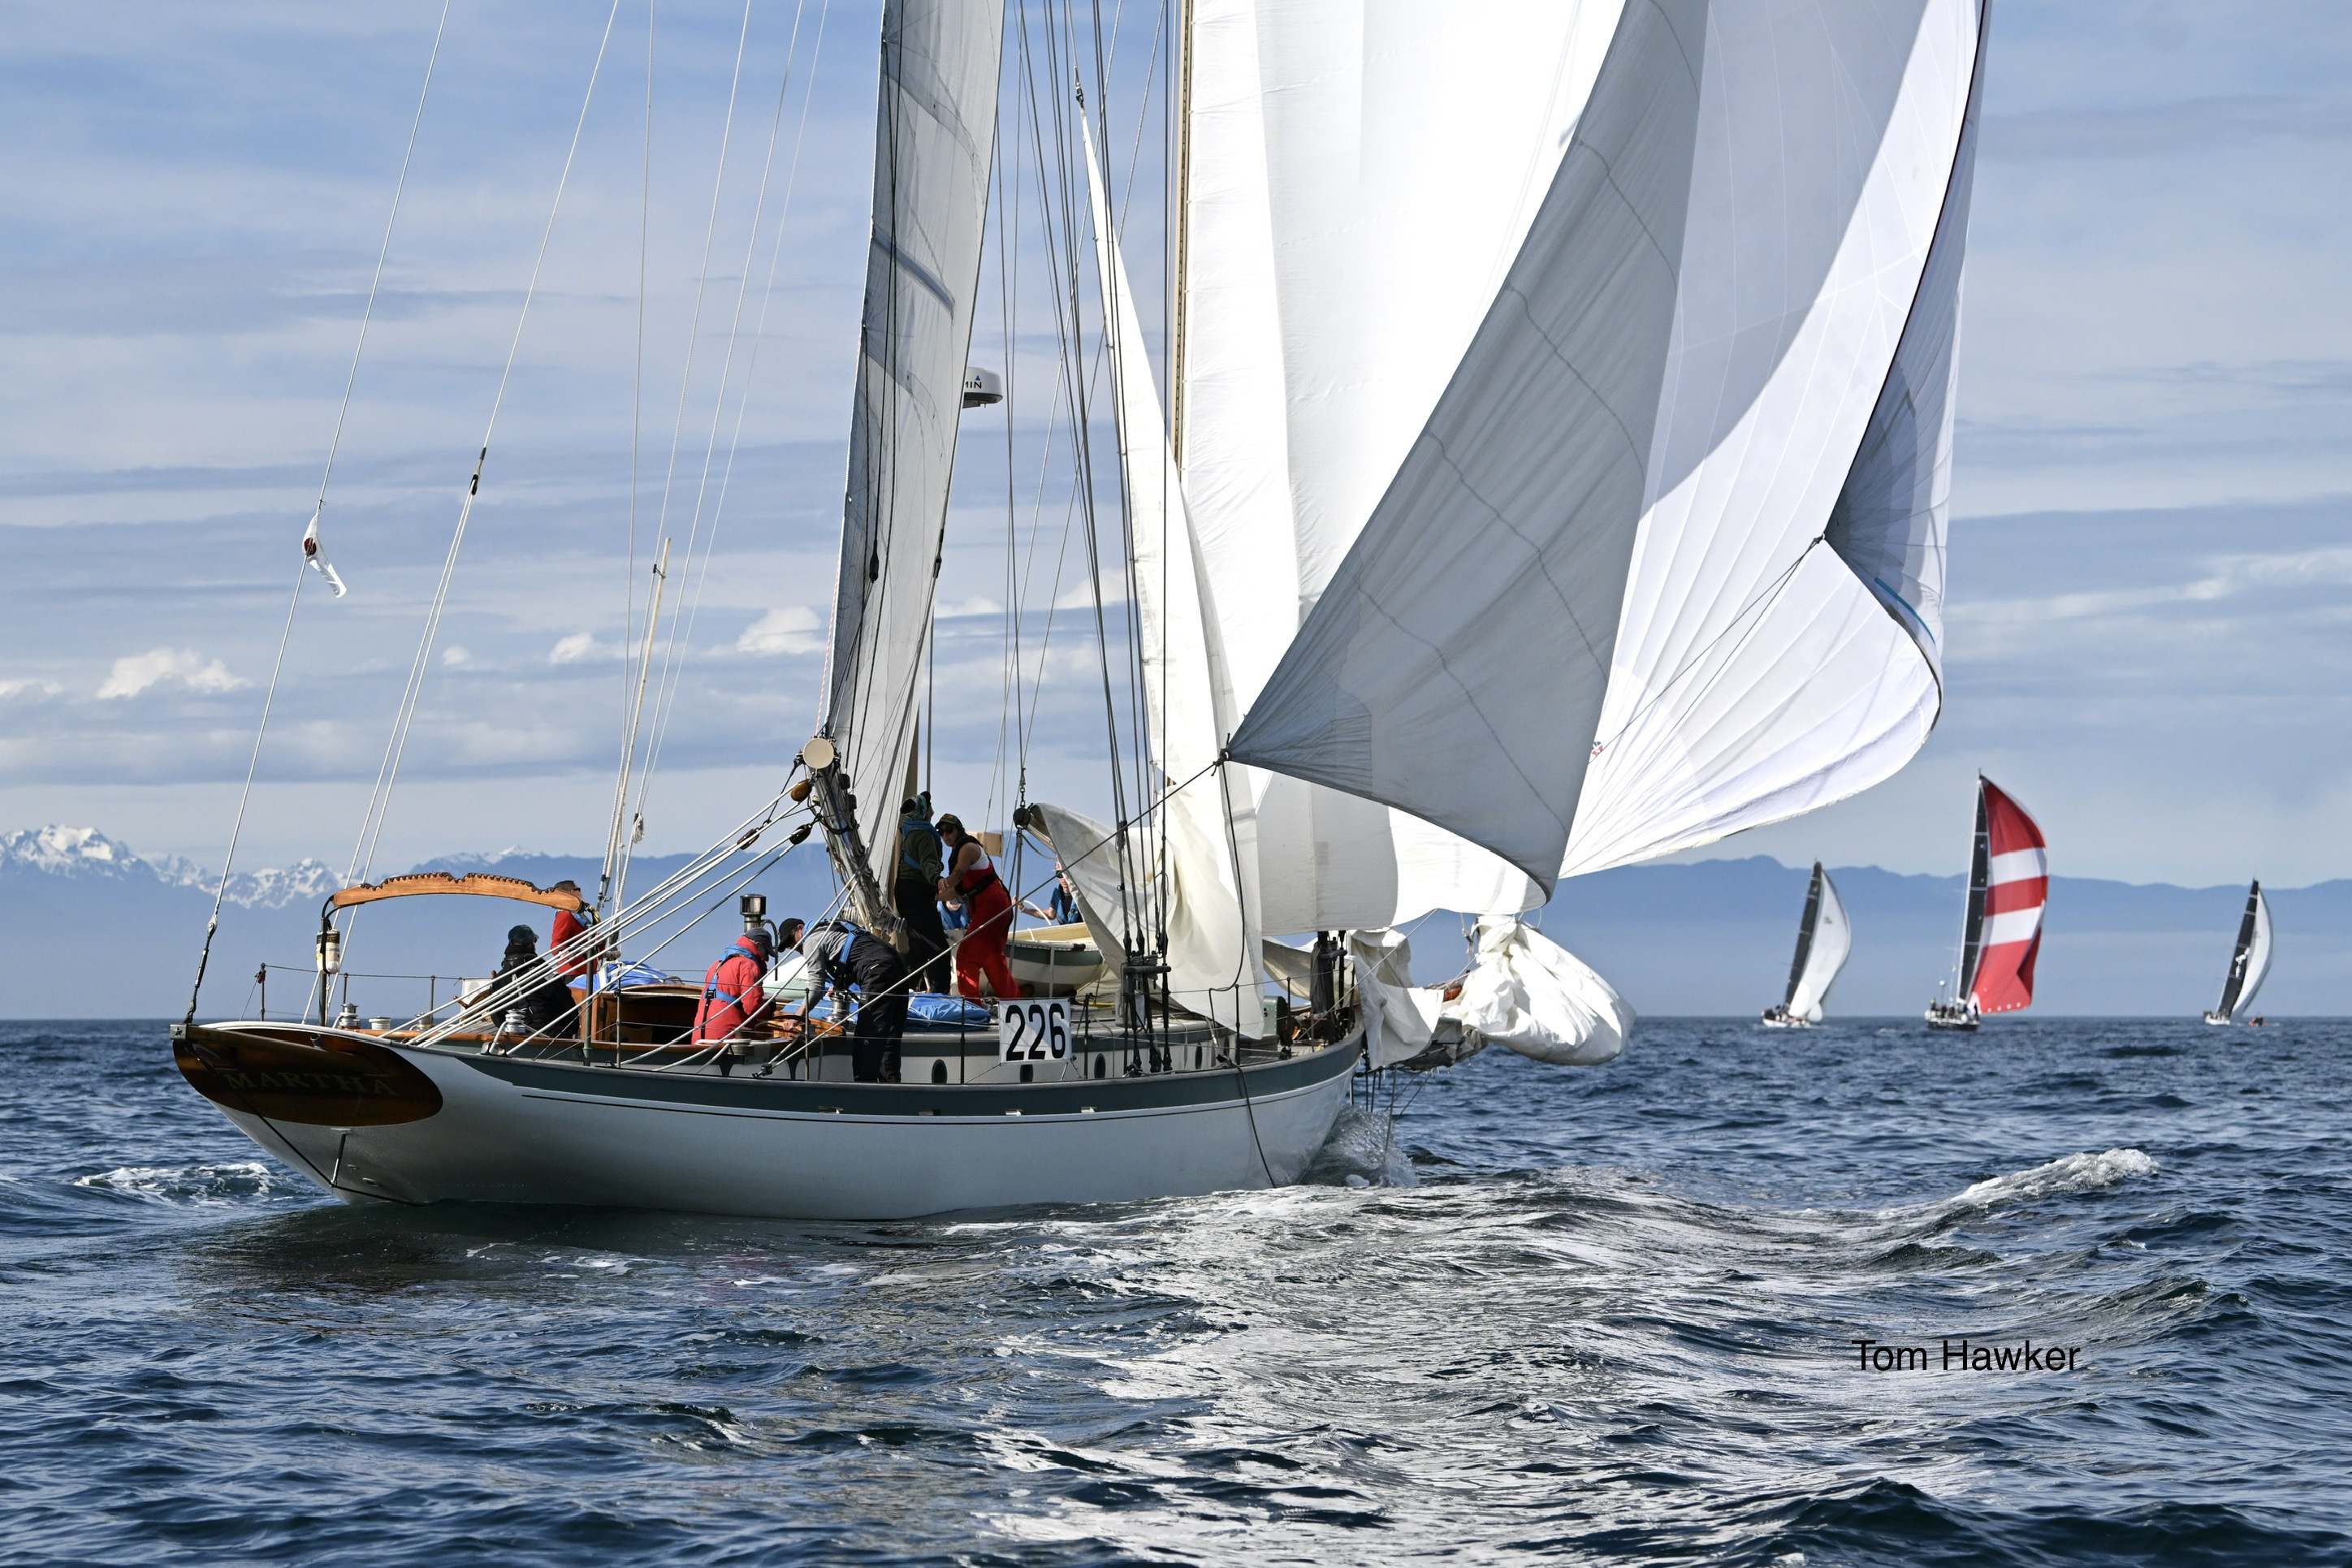 swiftsure international yacht race